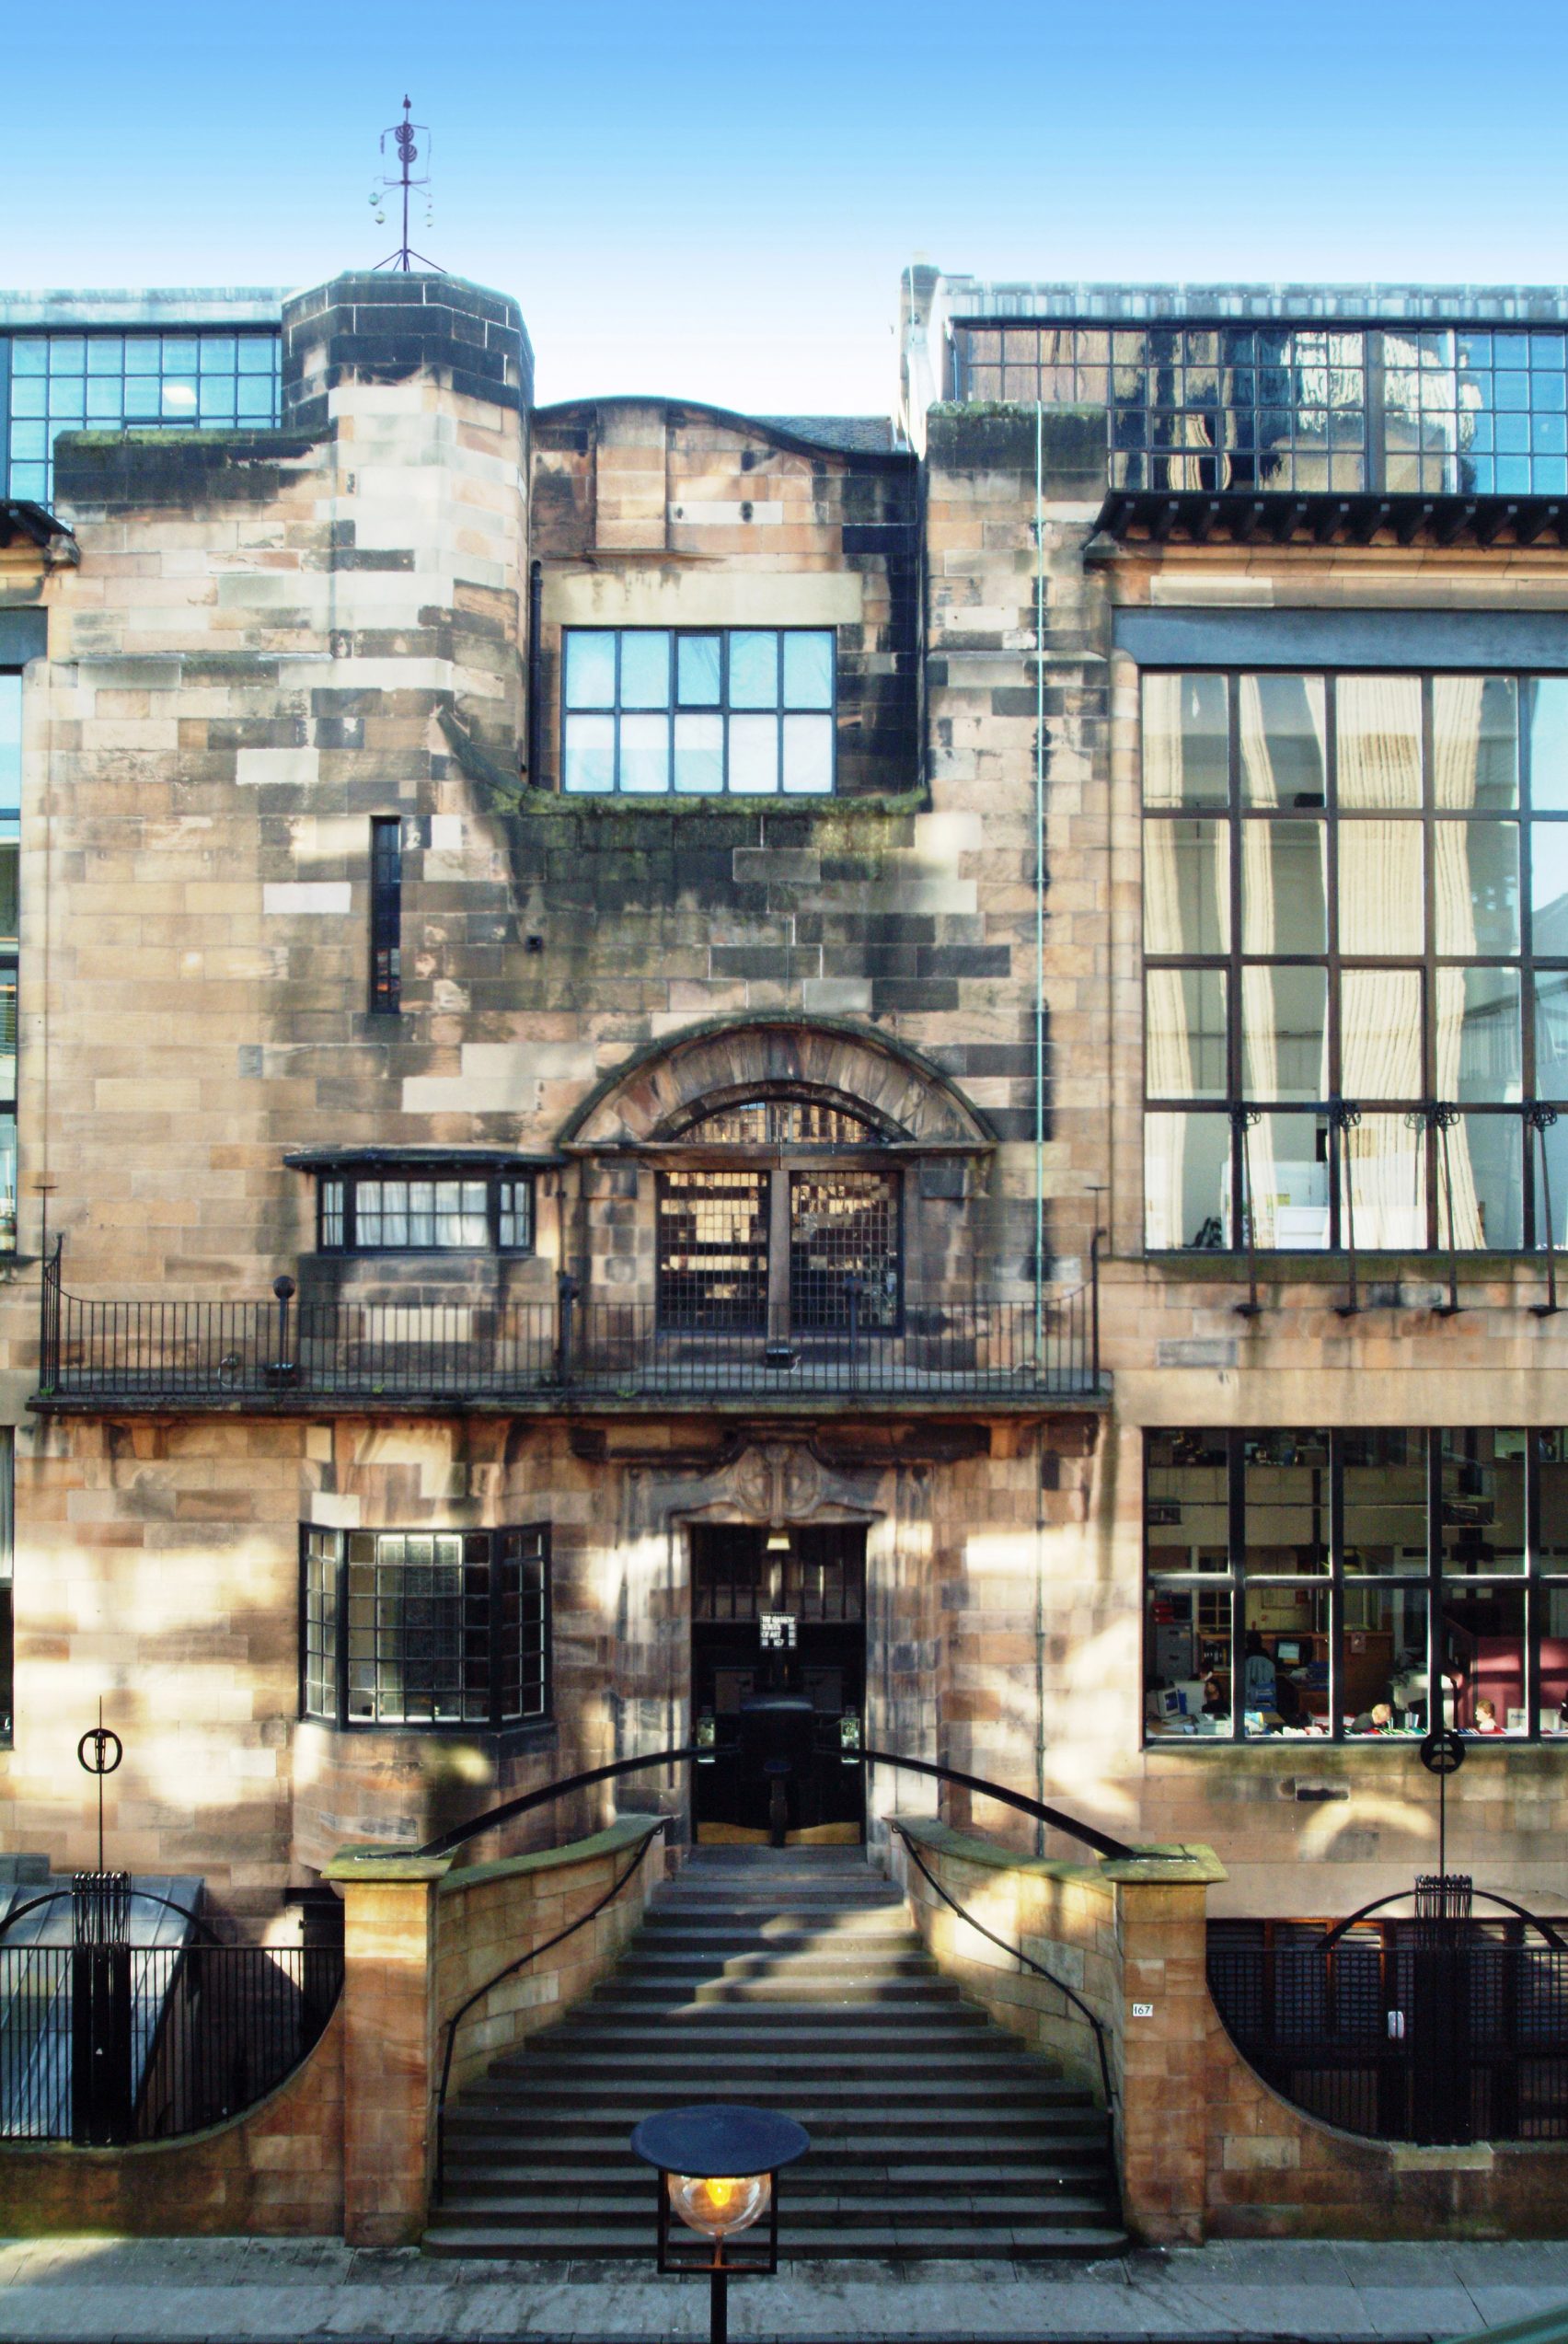 Glasgow School Of Art Is Charles Rennie Mackintosh S Masterwork